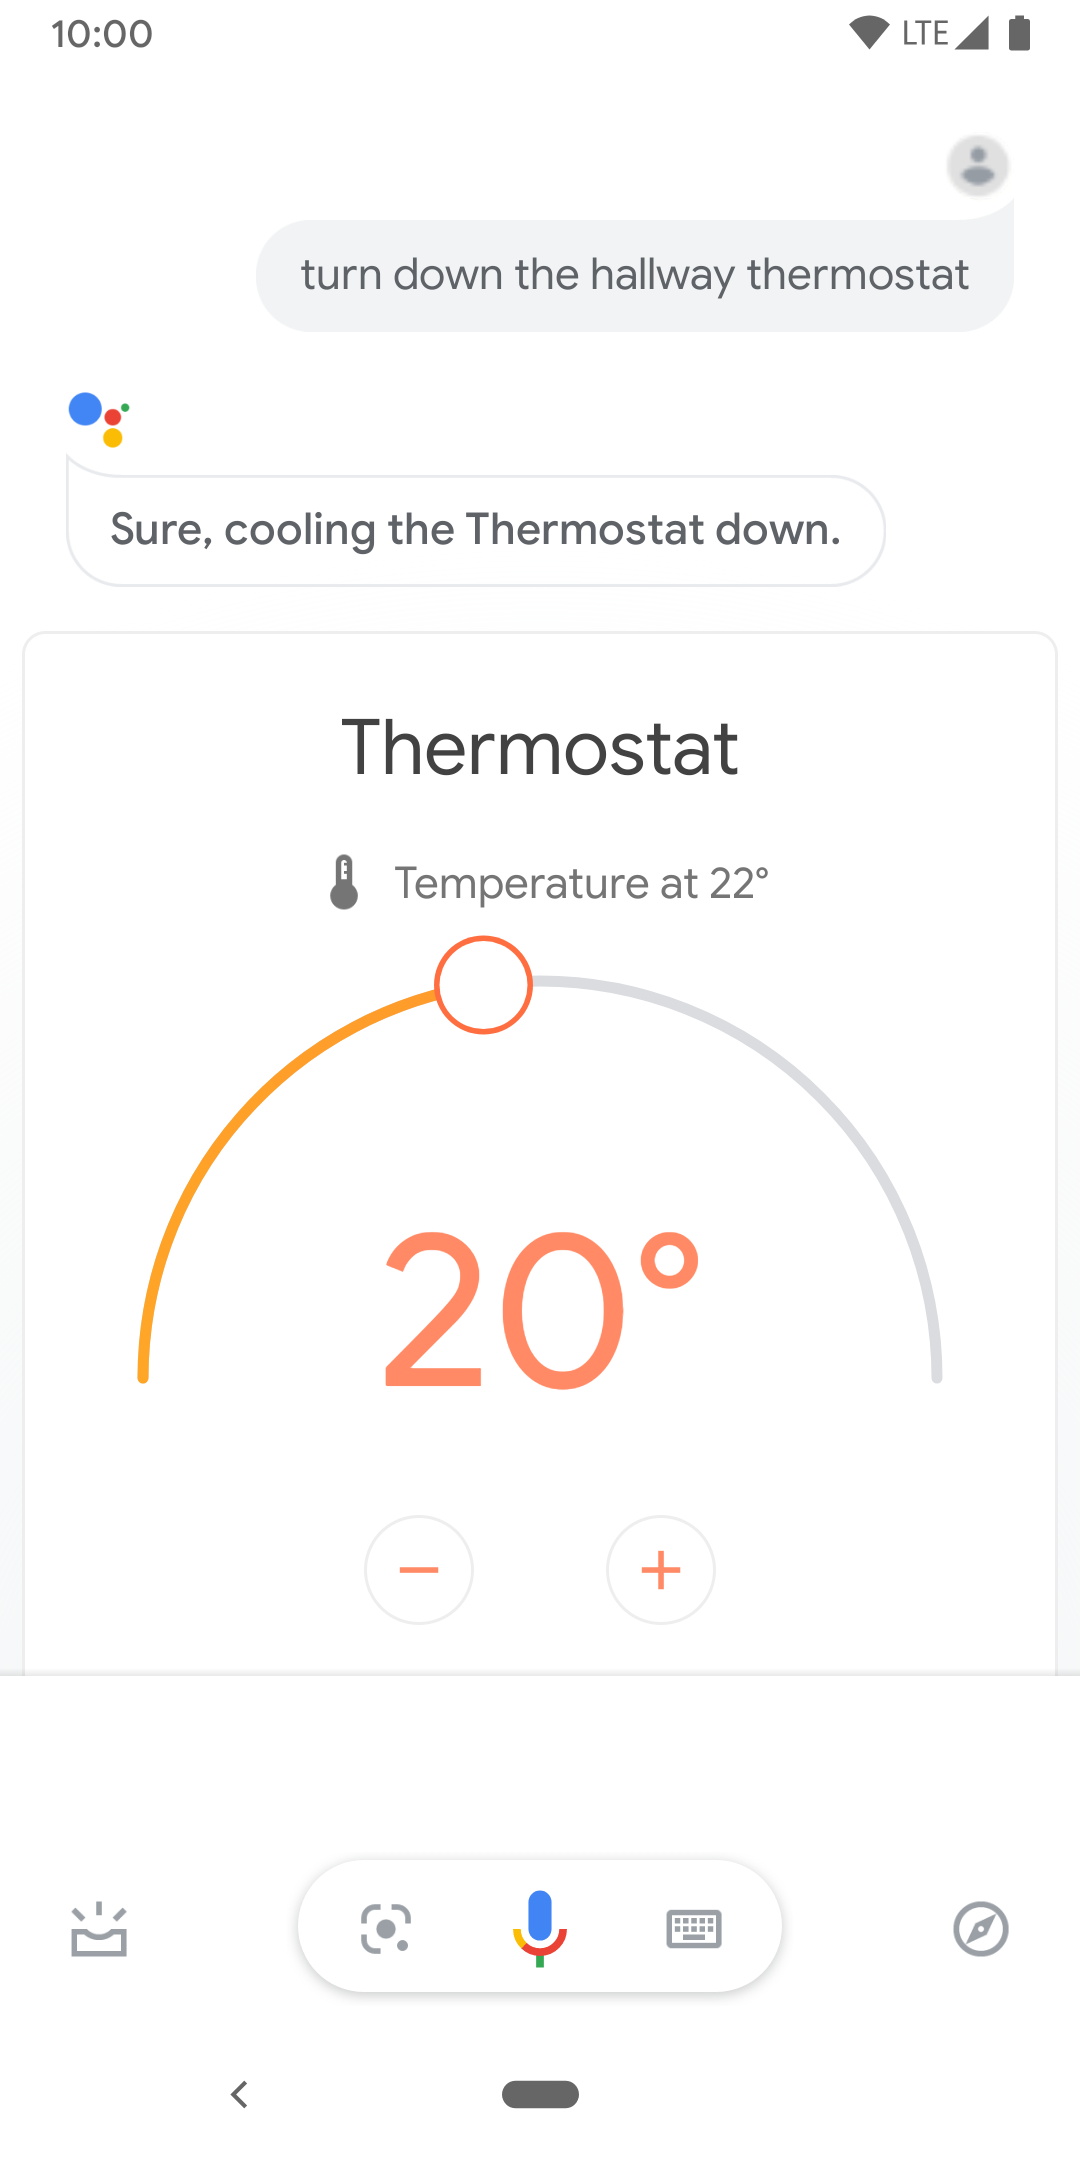 Esta imagem mostra os controles por toque para controlar a temperatura do termostato do corredor.